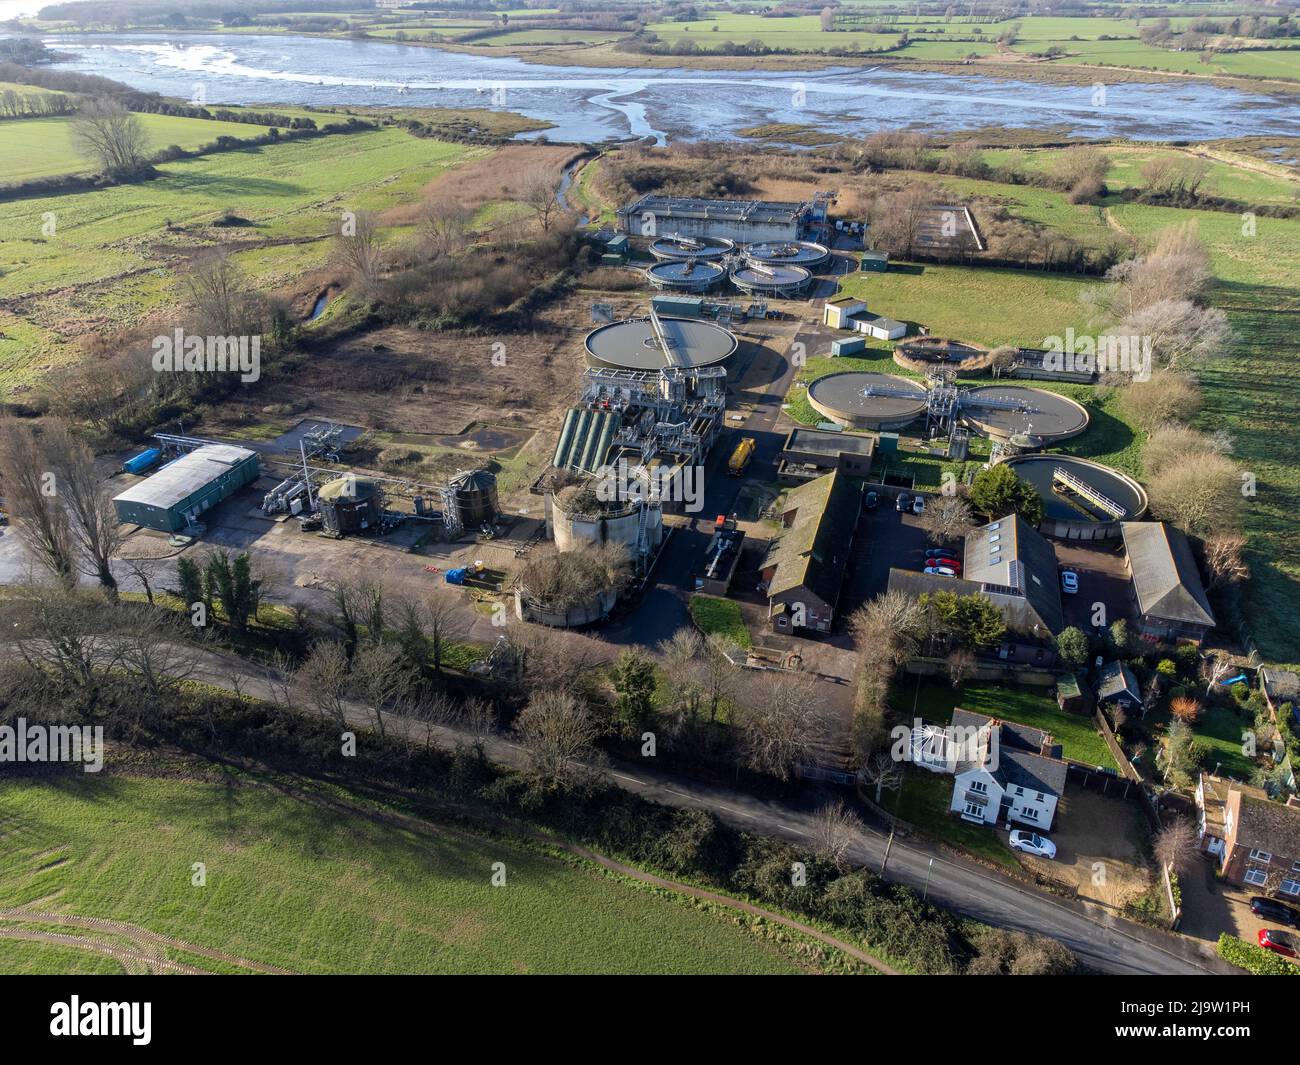 Vista aérea de las obras de tratamiento de aguas residuales de Chichester en Southern Water, West Sussex, Inglaterra Foto de stock